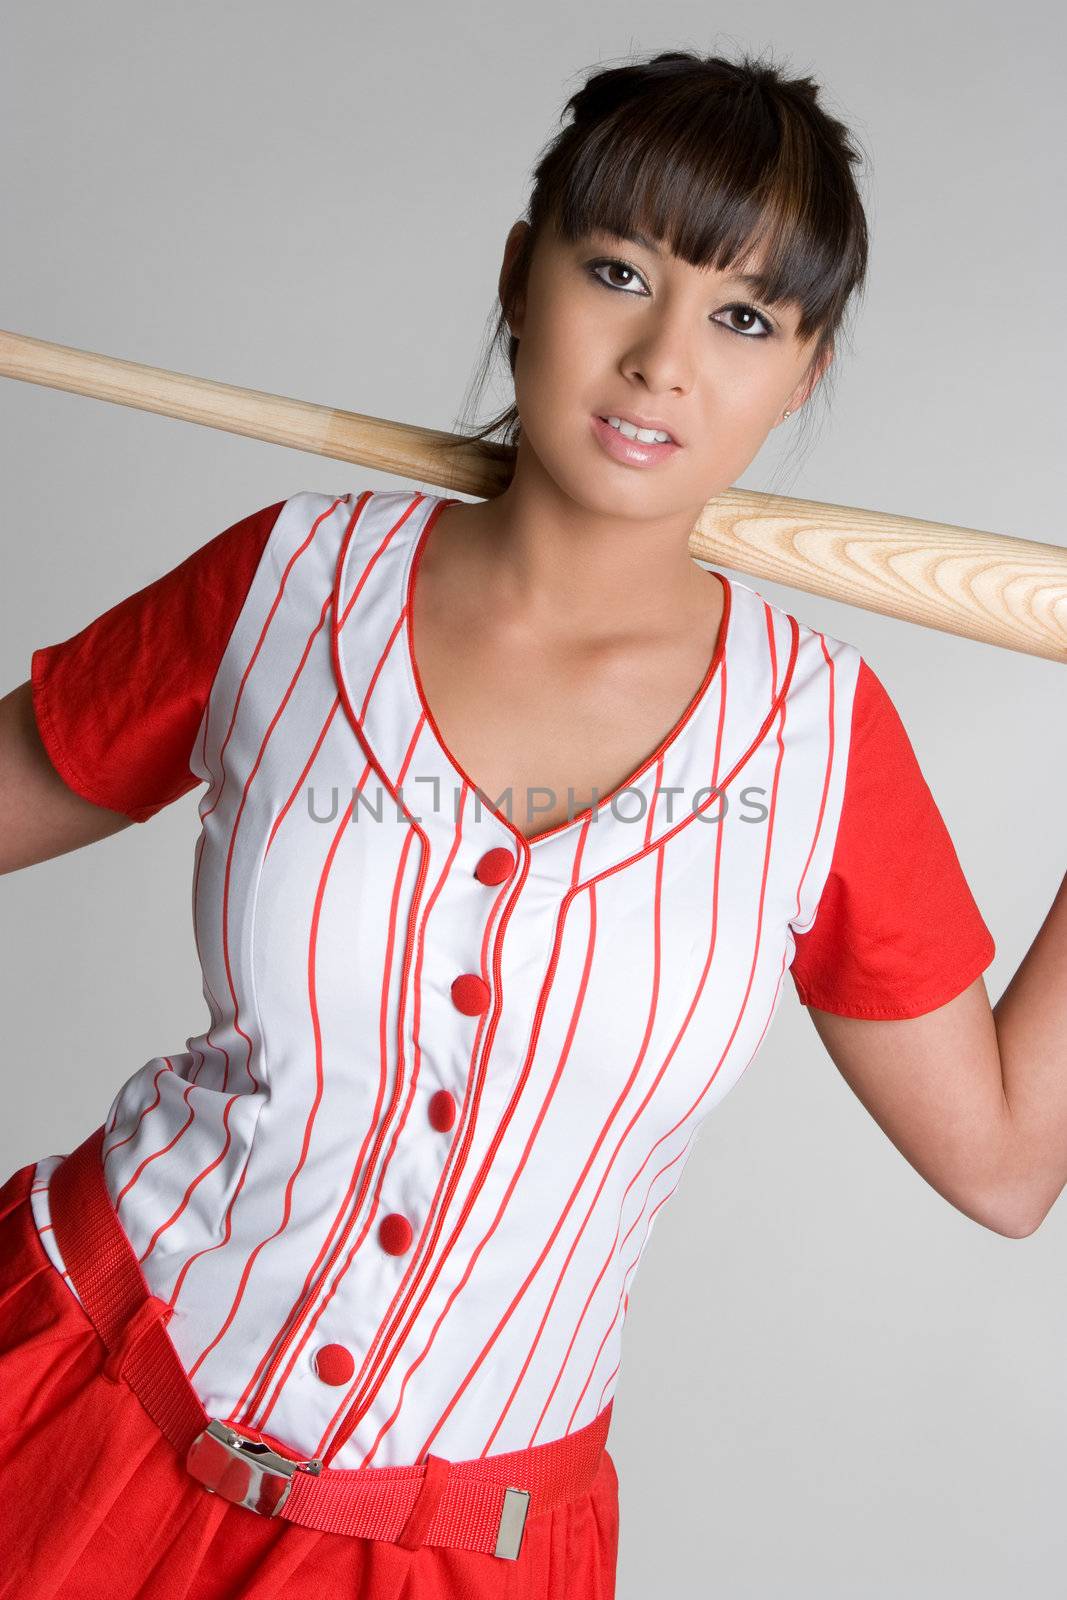 Asian female baseball player